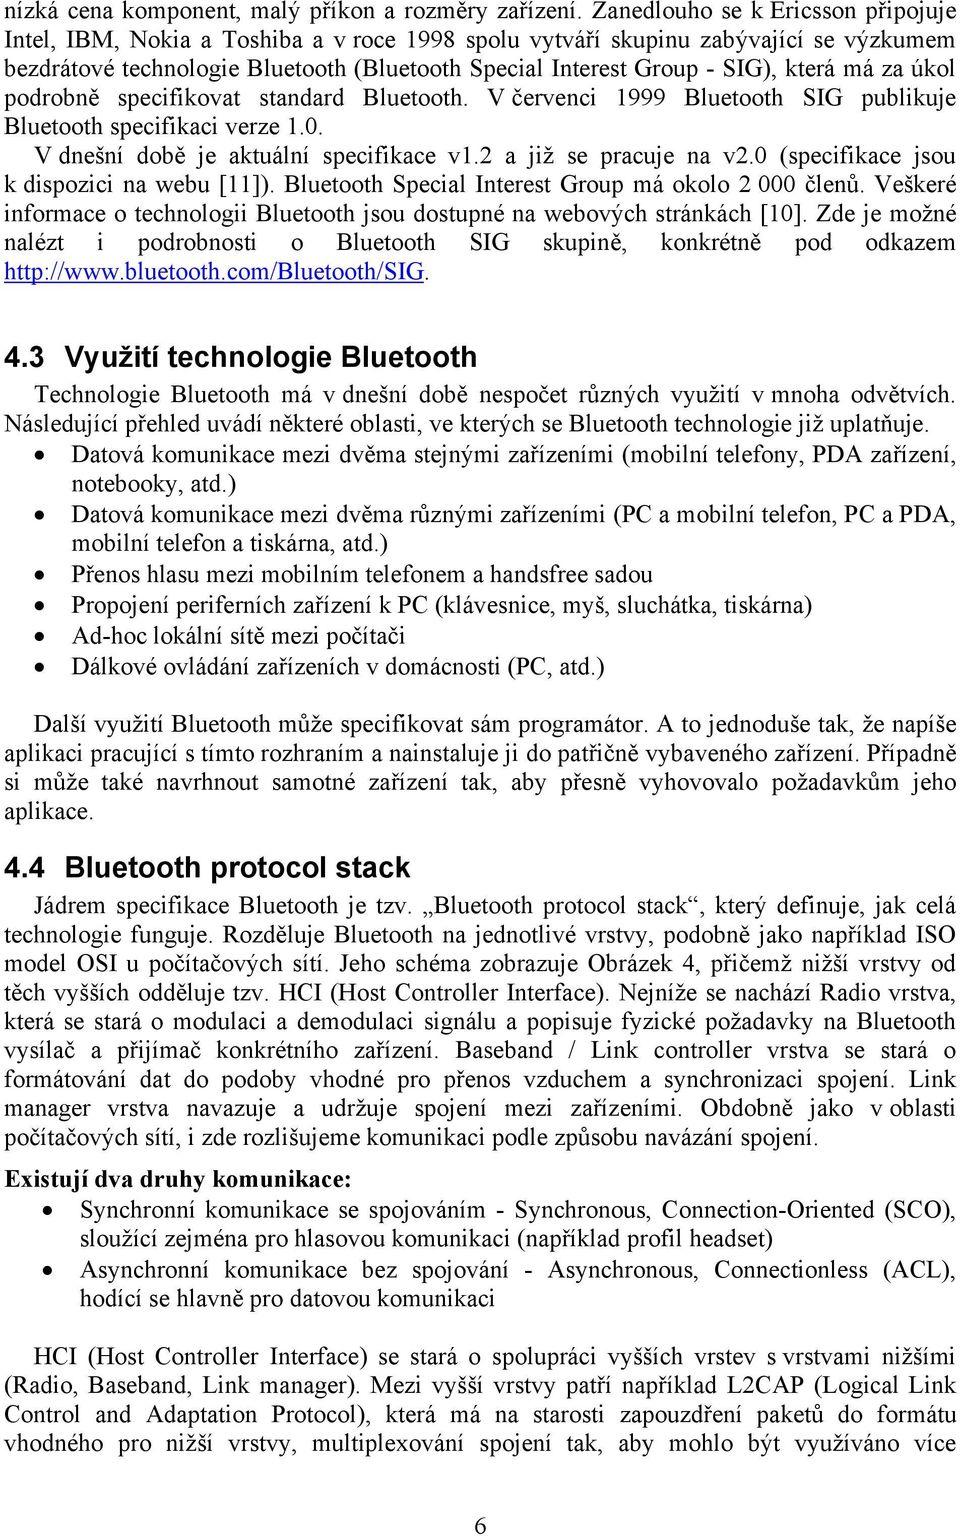 která má za úkol podrobně specifikovat standard Bluetooth. V červenci 1999 Bluetooth SIG publikuje Bluetooth specifikaci verze 1.0. V dnešní době je aktuální specifikace v1.2 a již se pracuje na v2.